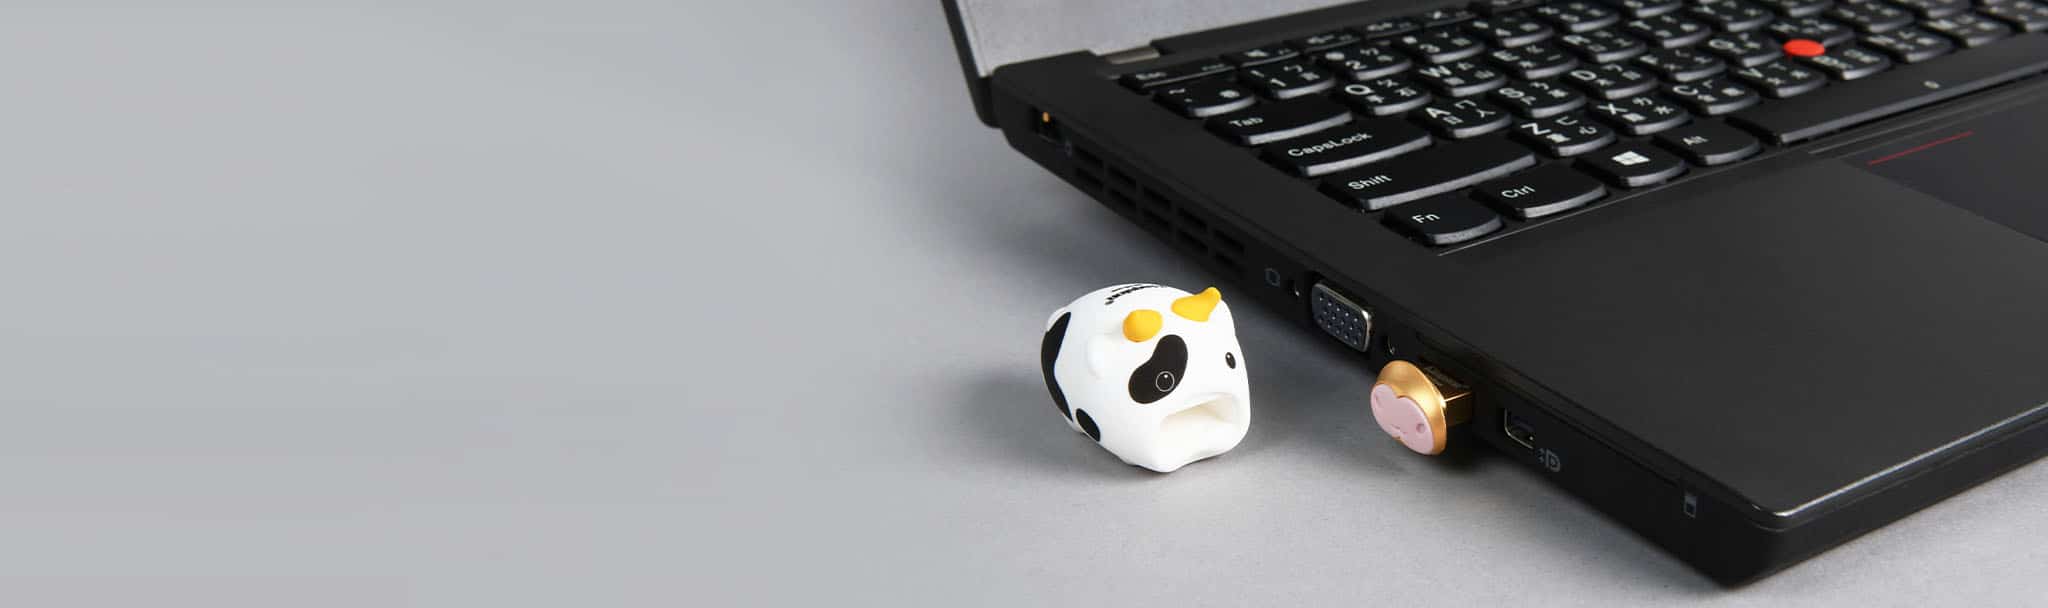 Kingston ra mắt USB Mini Cow phiên bản giới hạn 2021 tại Việt Nam